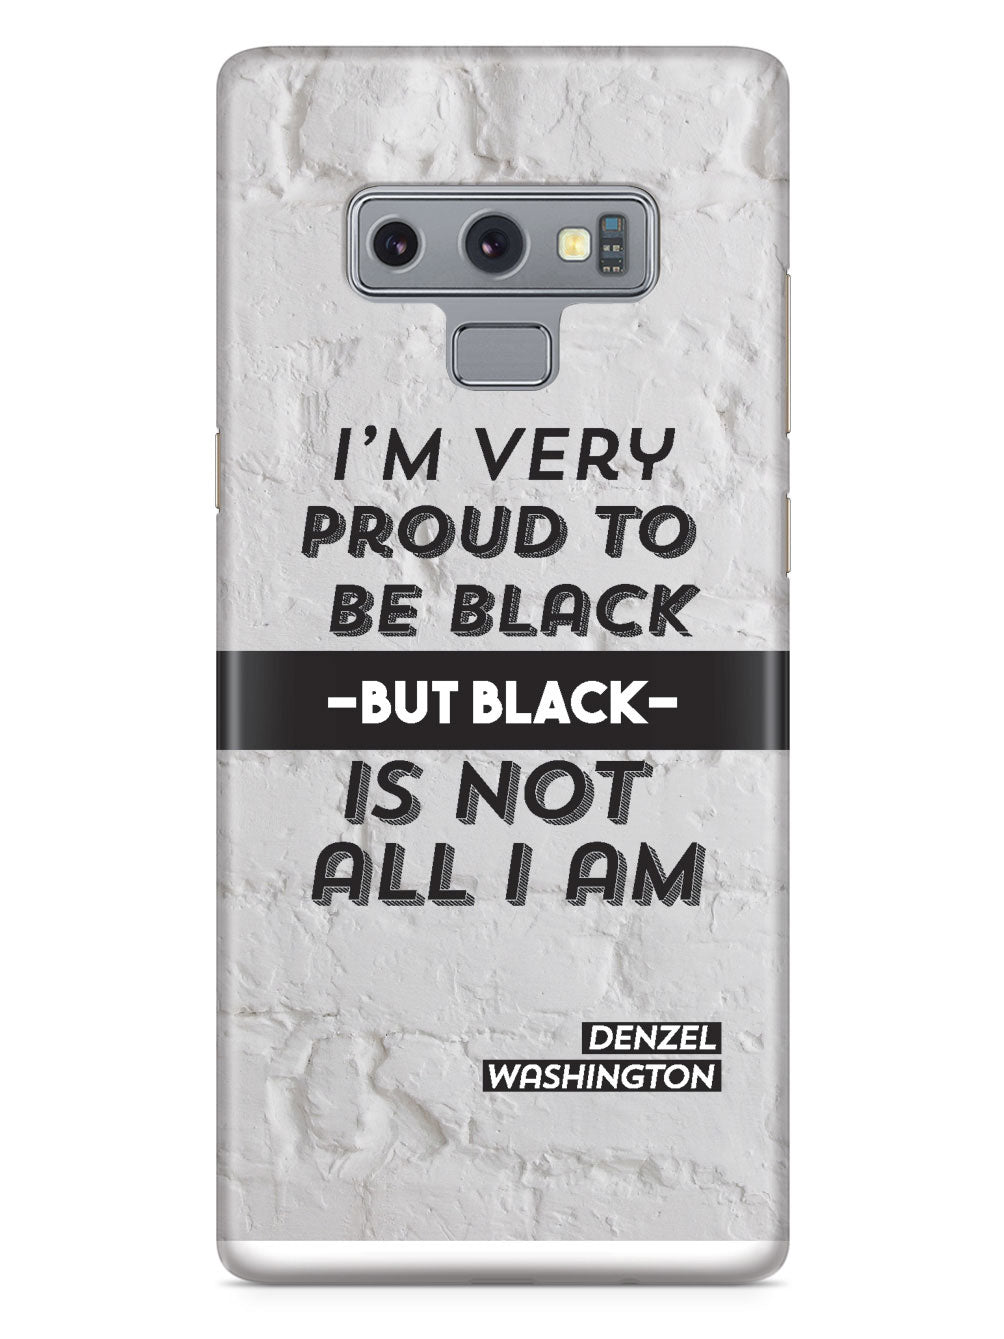 Proud to be Black - Denzel Washington Case